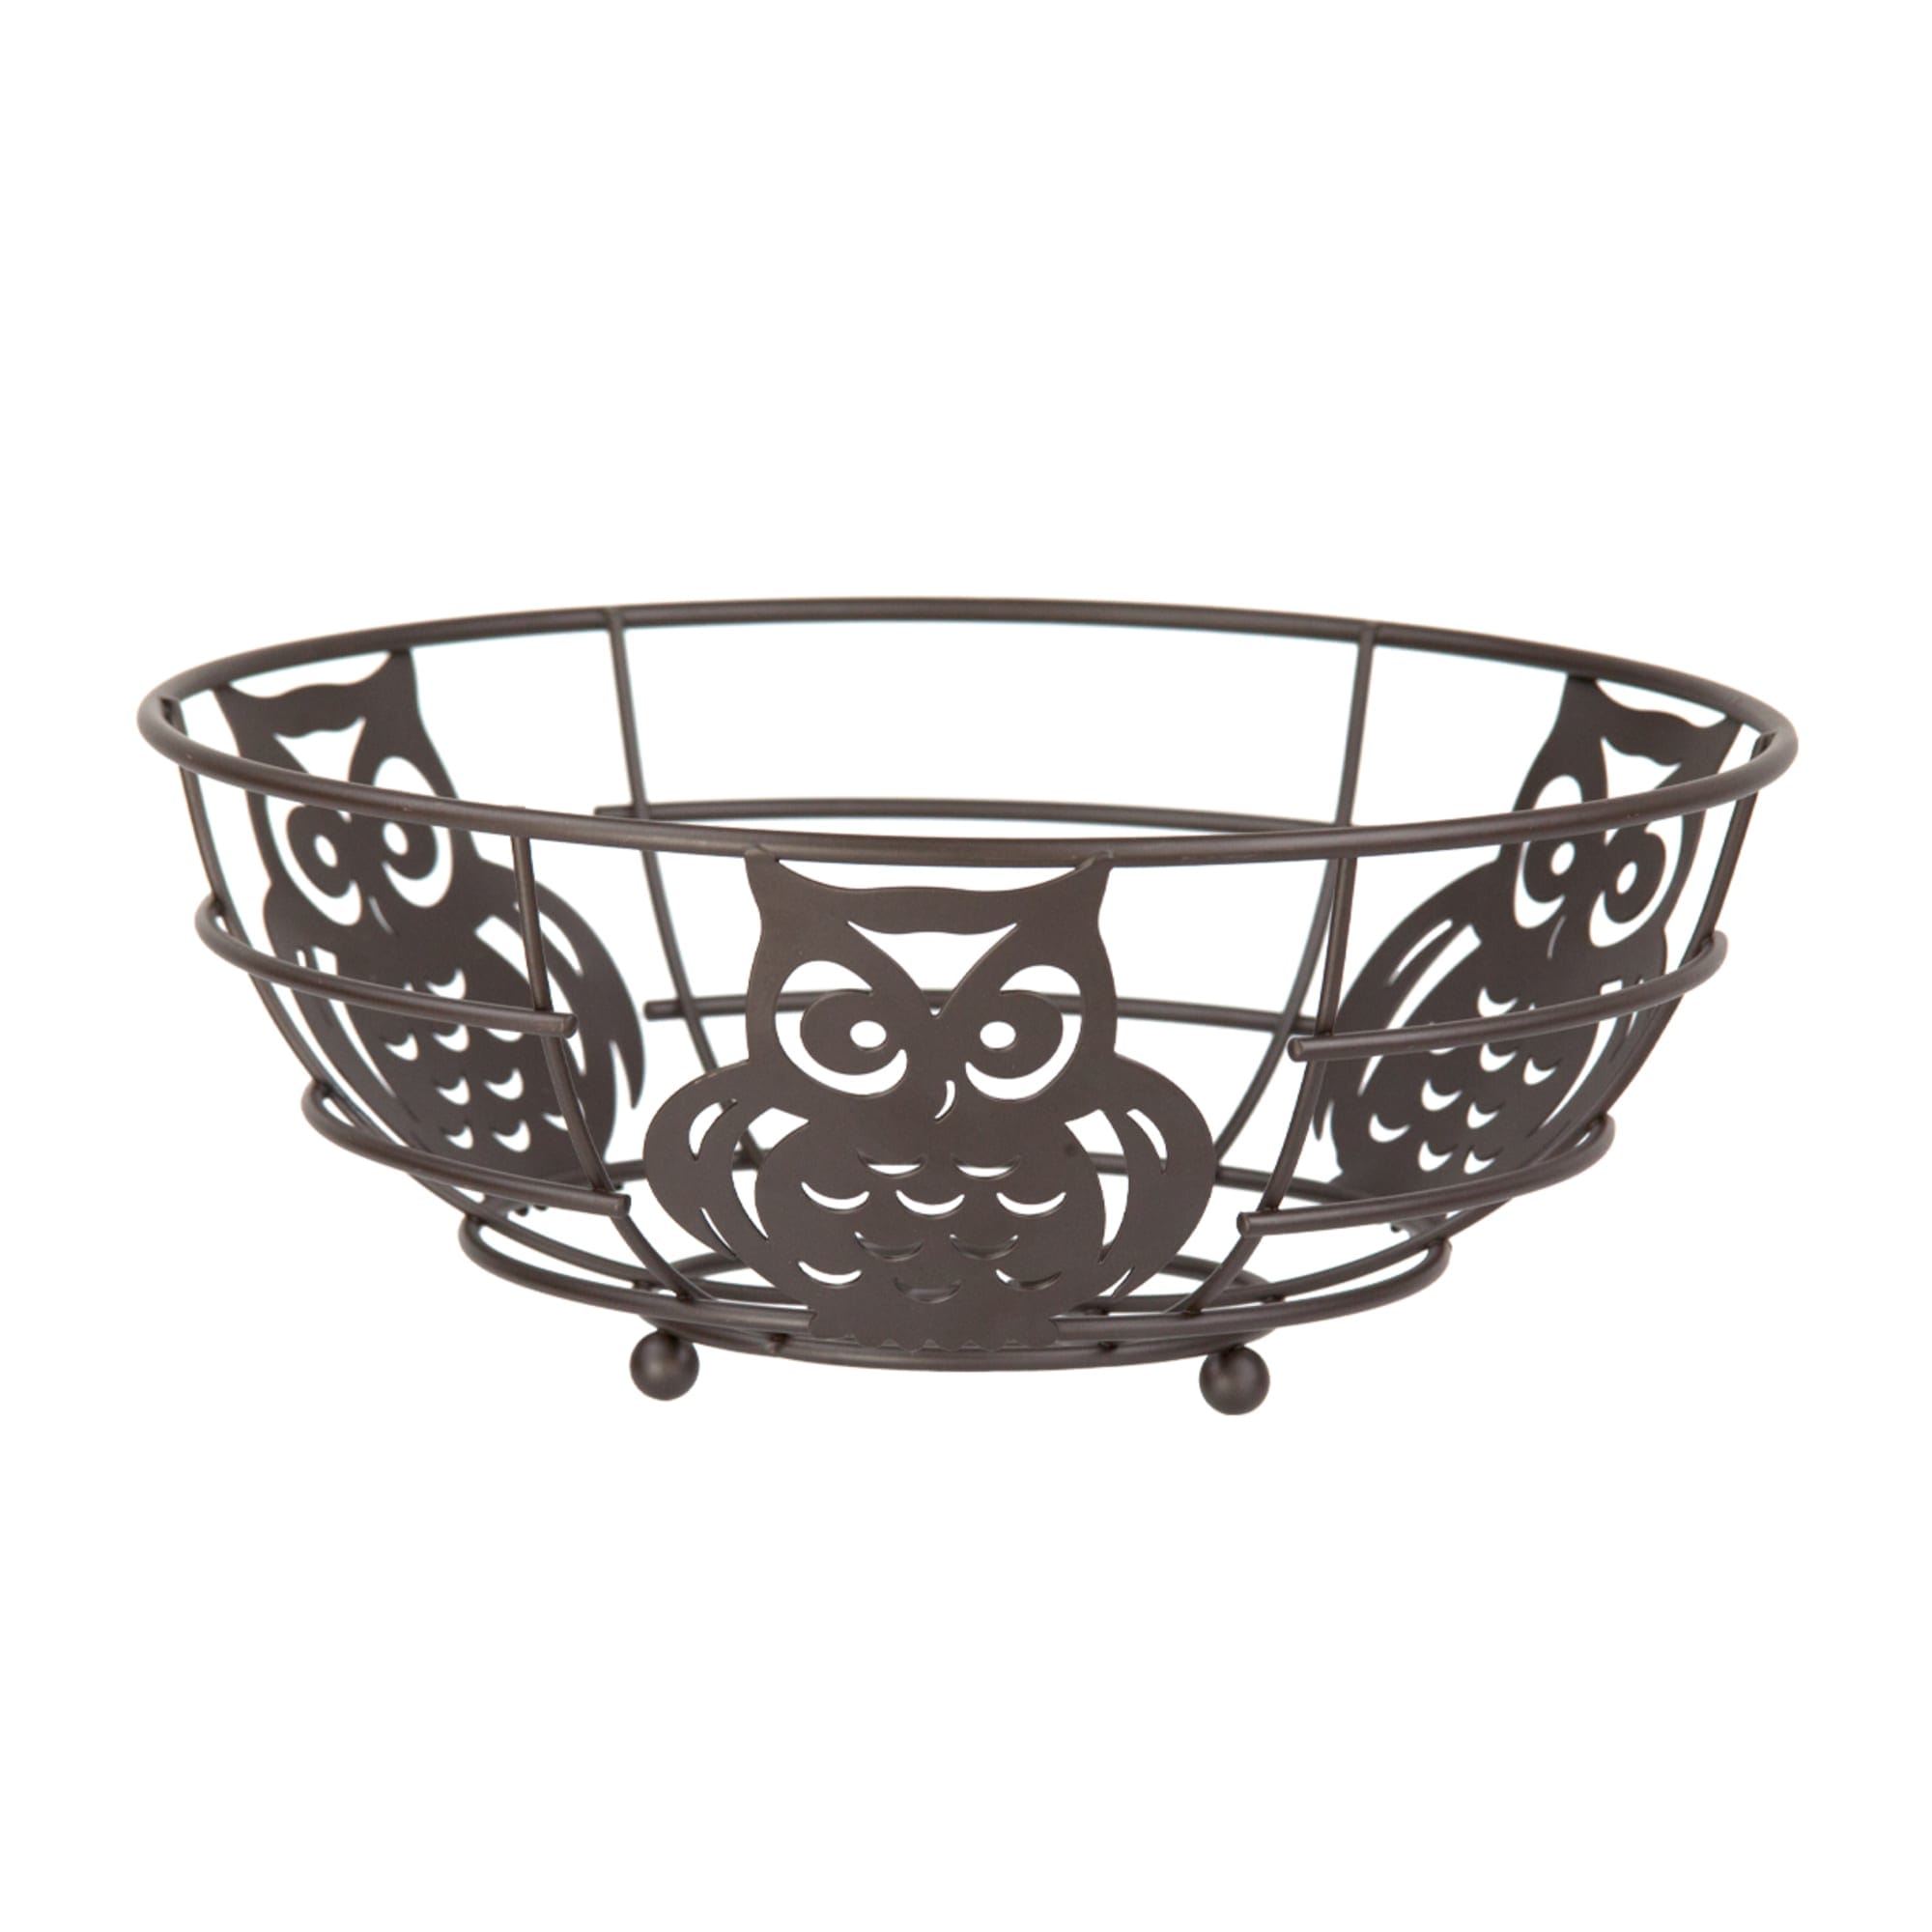 Home Basics Owl Fruit Bowl $6.50 EACH, CASE PACK OF 12